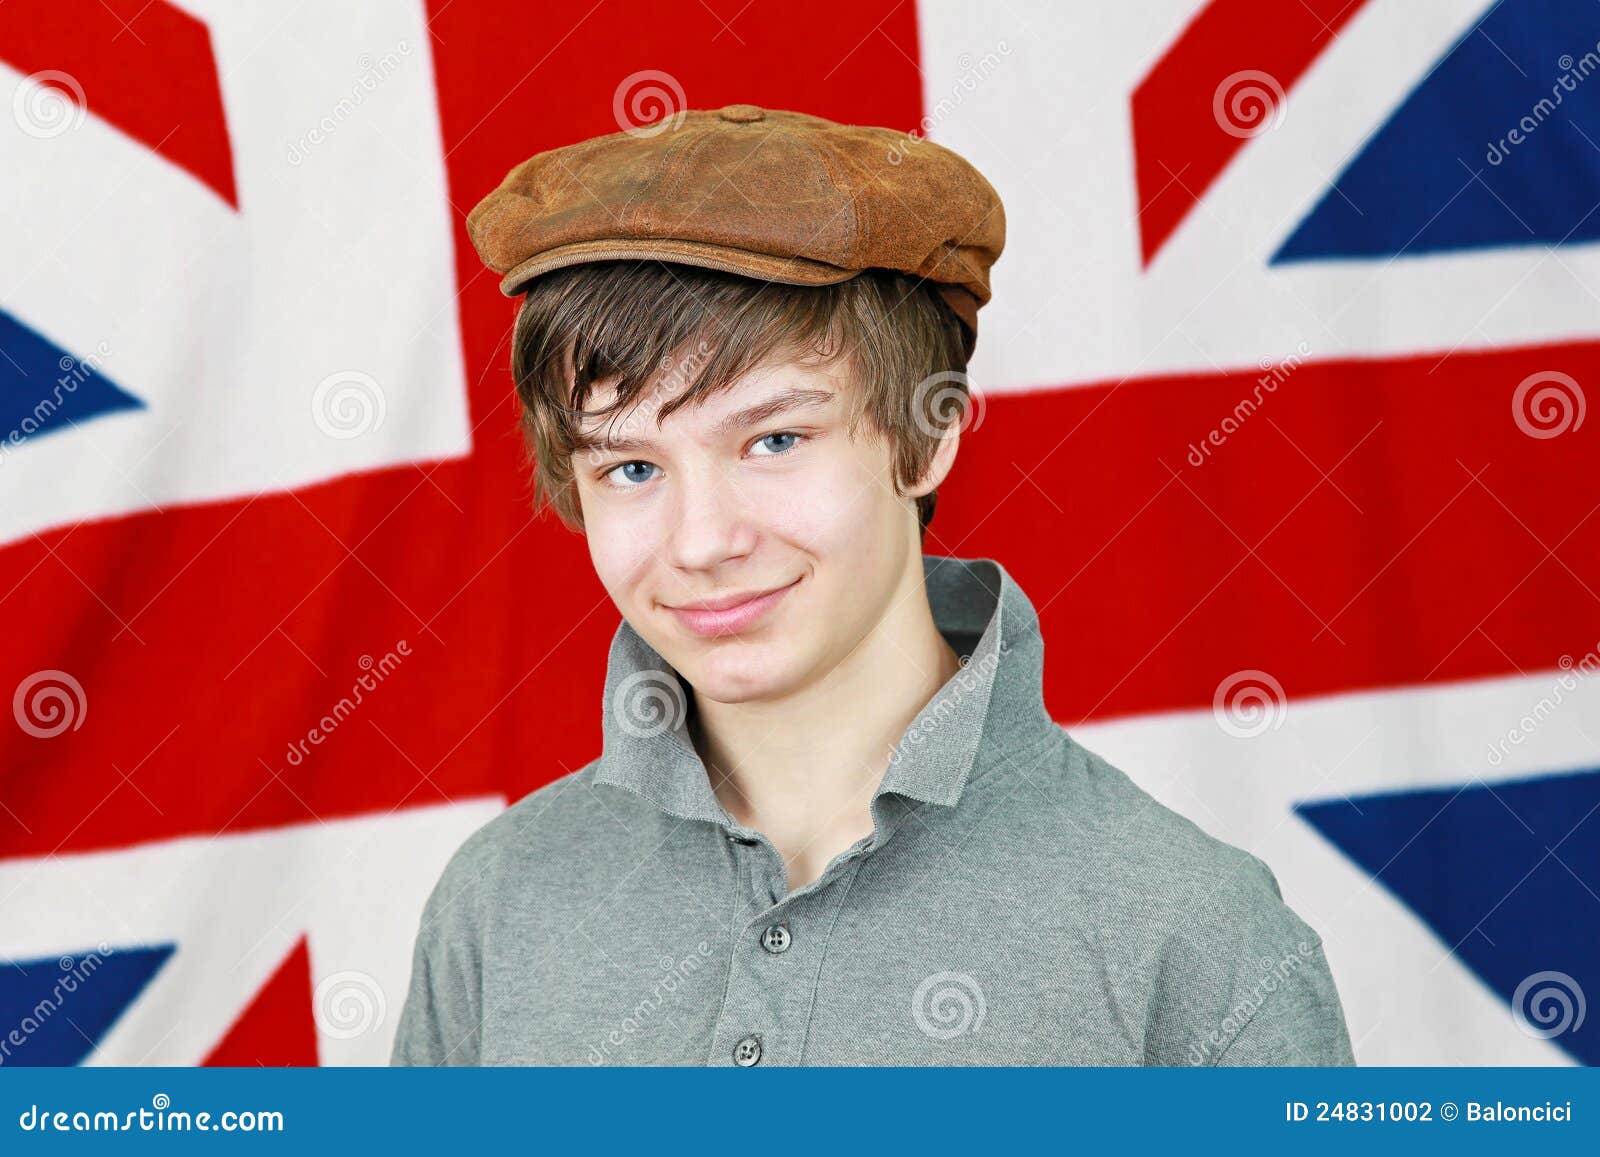 Britain's young. Британский мальчик. Мальчик в Англии. Великобританский мальчик. Британцы парни подростки.